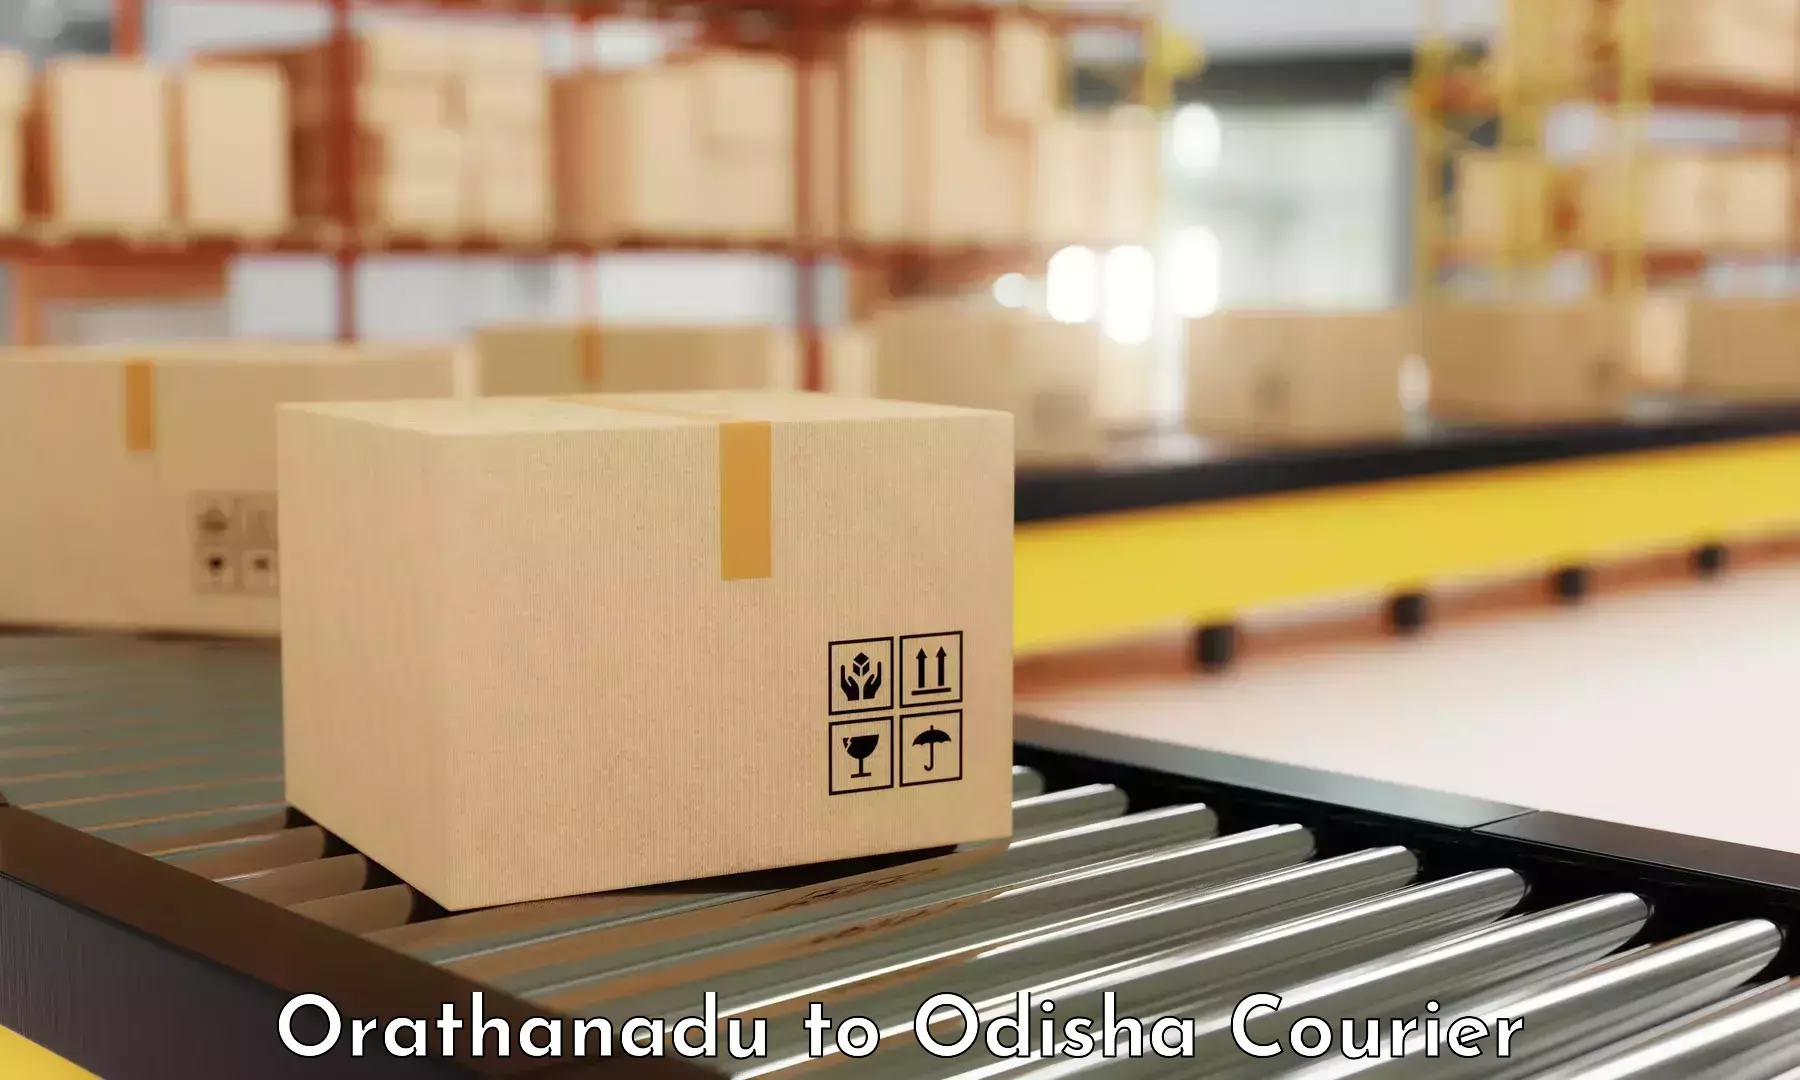 Bulk shipment Orathanadu to Dandisahi